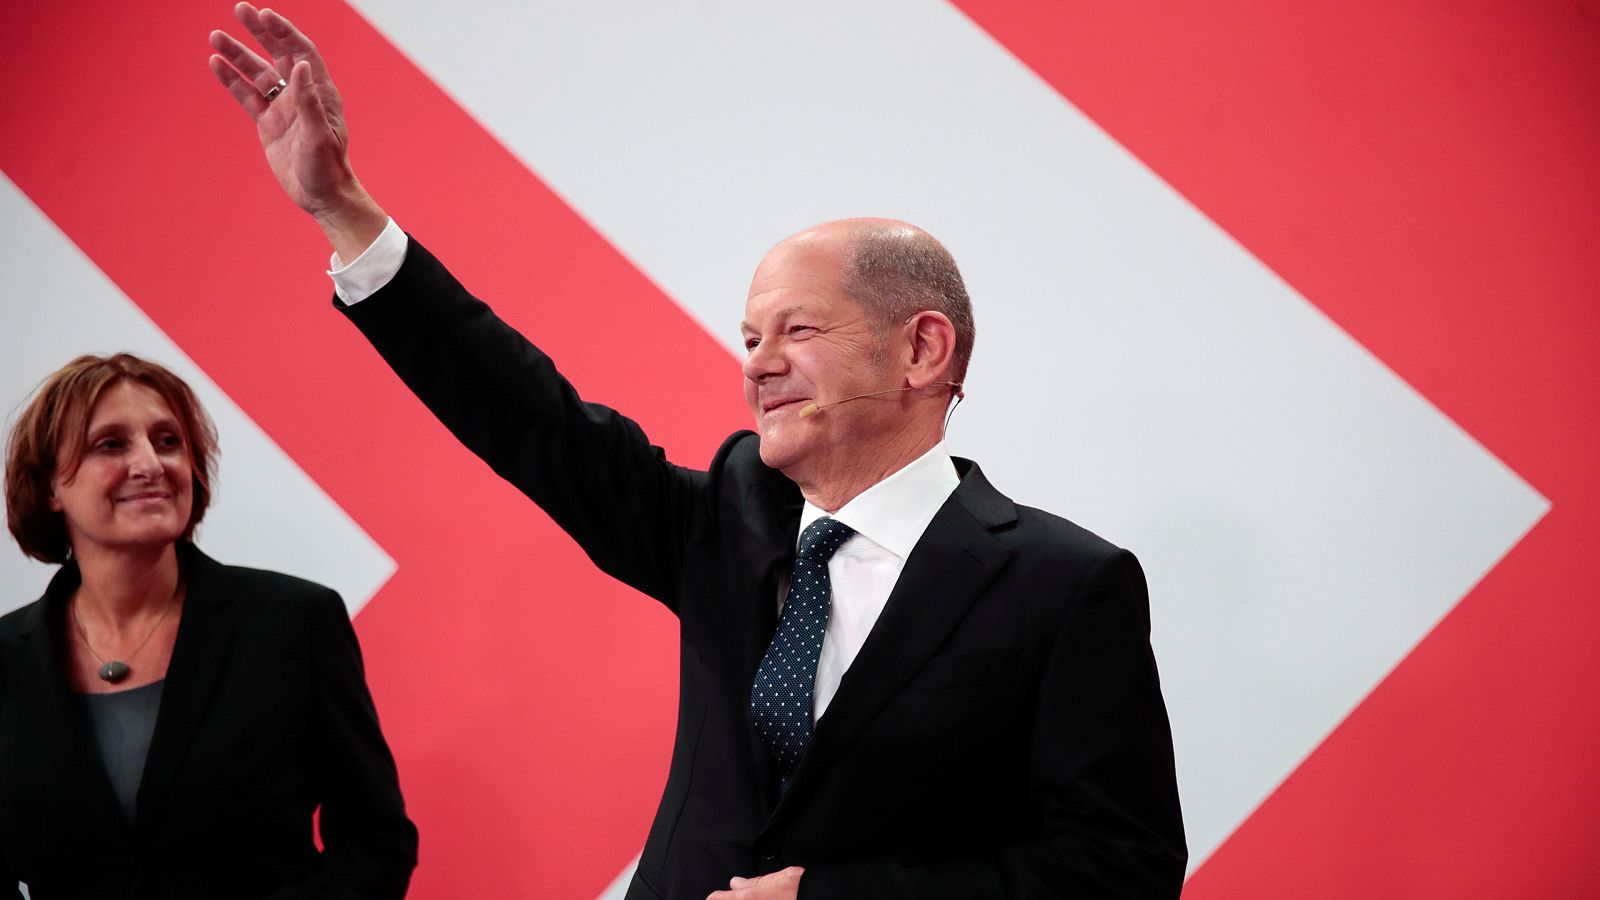 Elecciones alemanas - Scholz: "Muchos alemanes quieren que sea el próximo canciller"